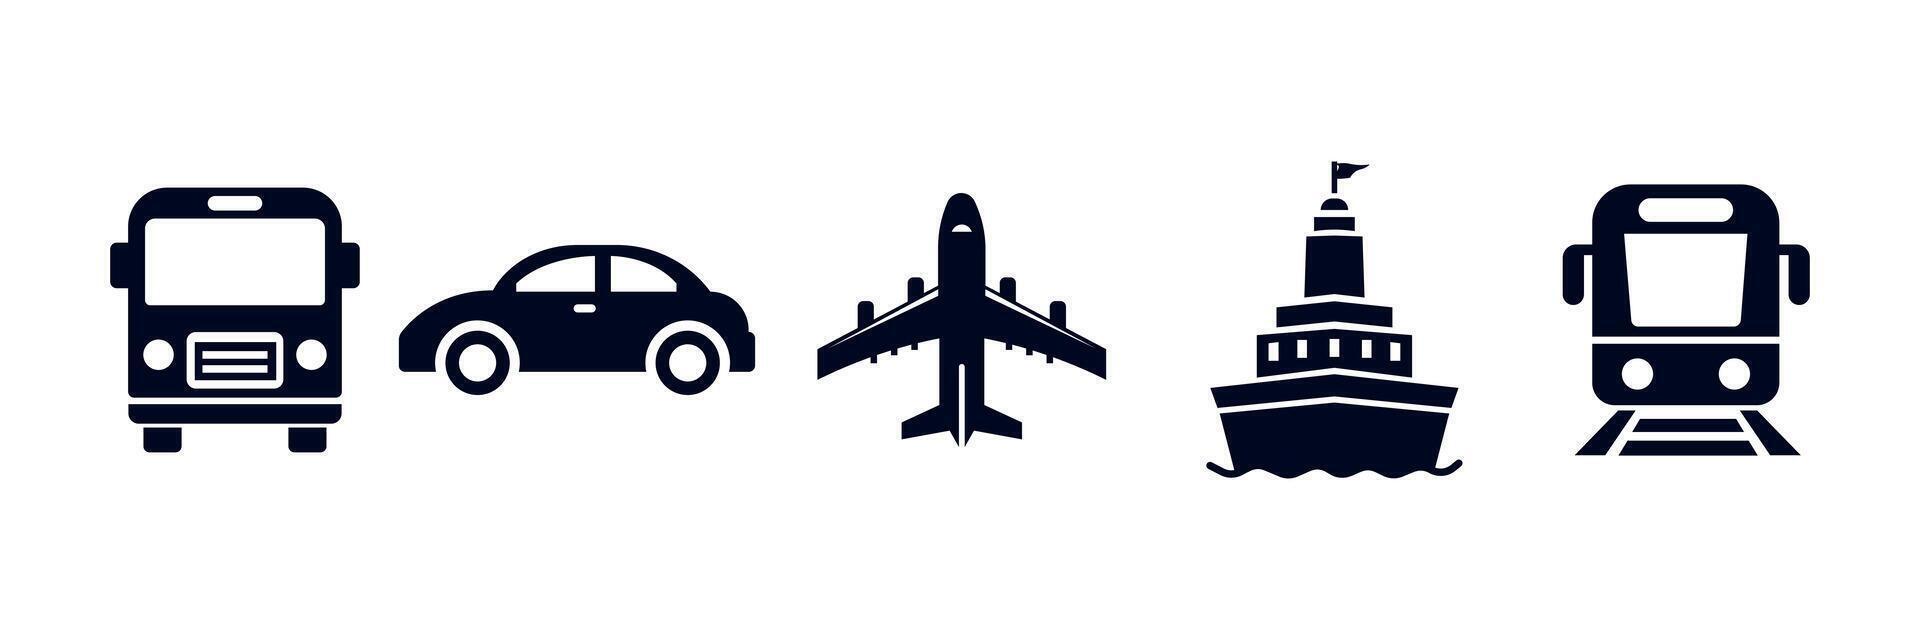 pubblico trasporto impostare. mezzi di trasporto icone. pubblico autobus, automobile, aereo, nave o traghetto, treno. vettore illustrazione